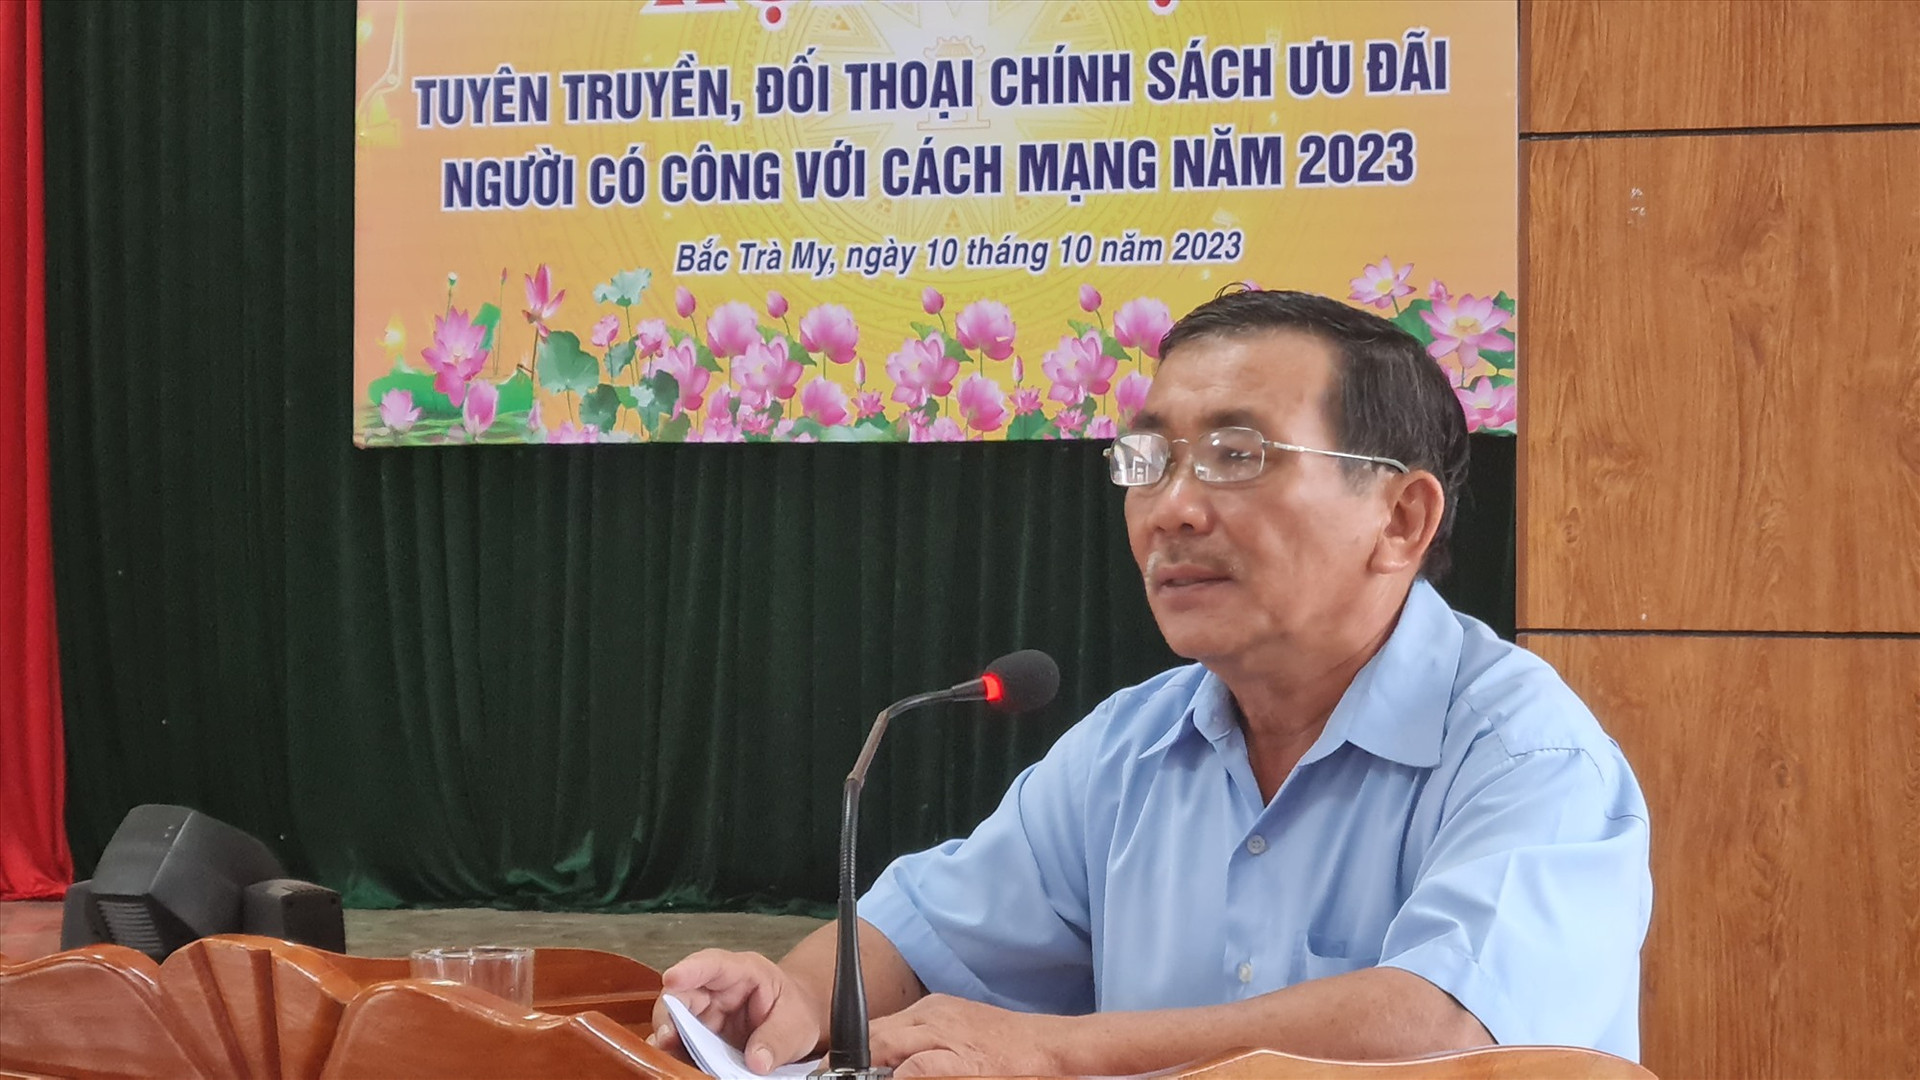 Phó Chủ tịch UBND huyện Bắc Trà My Lê Văn Tuấn phát biểu ý kiến với người có công tại hội nghị. Ảnh: D.L